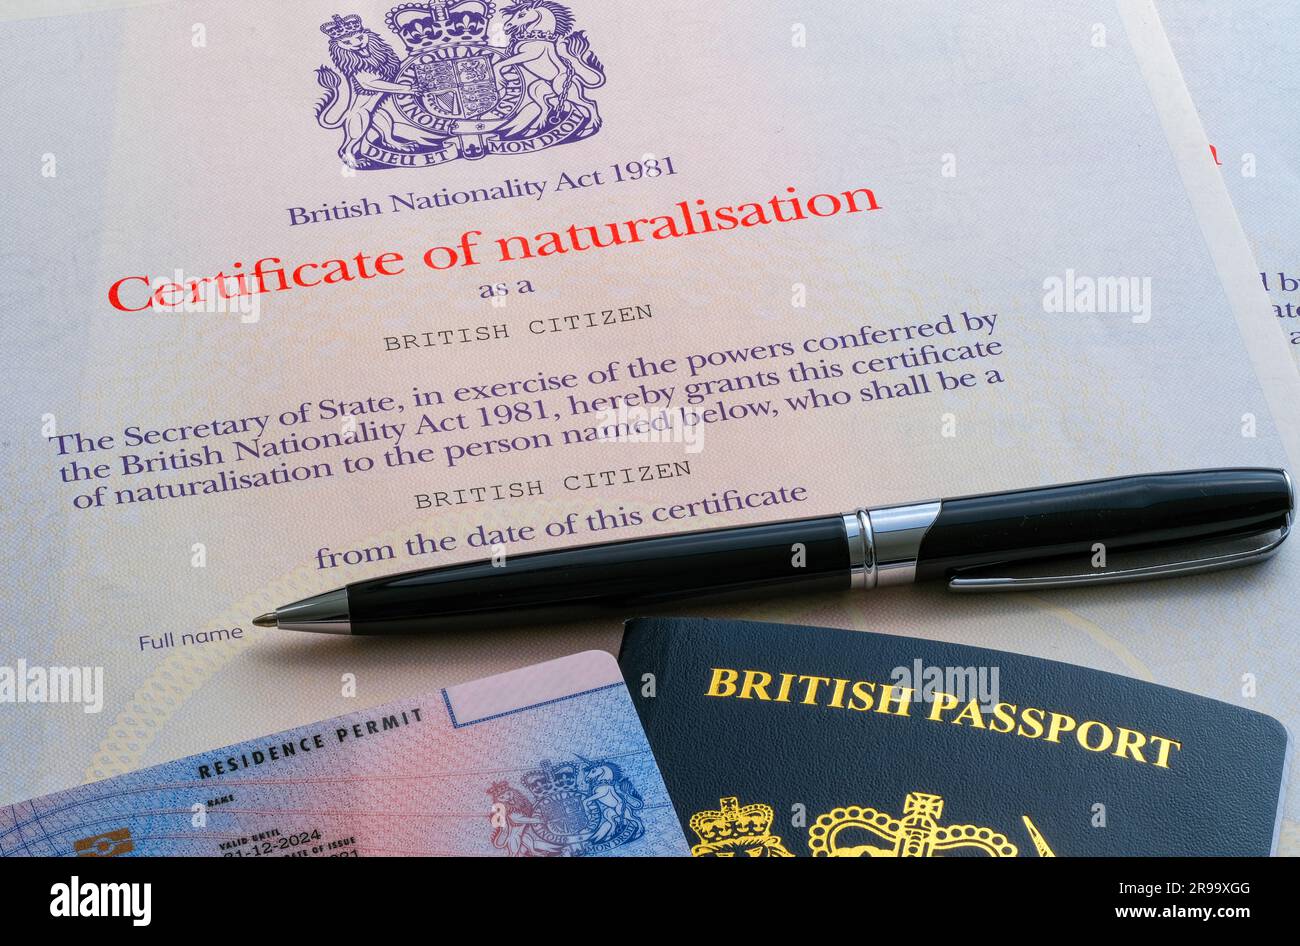 Biometrische Aufenthaltserlaubnis (ILR), britischer Reisepass zusätzlich zum Einbürgerungszertifikat als britischer Staatsbürger. Stafford, Großbritannien, 25. Juni 20 Stockfoto